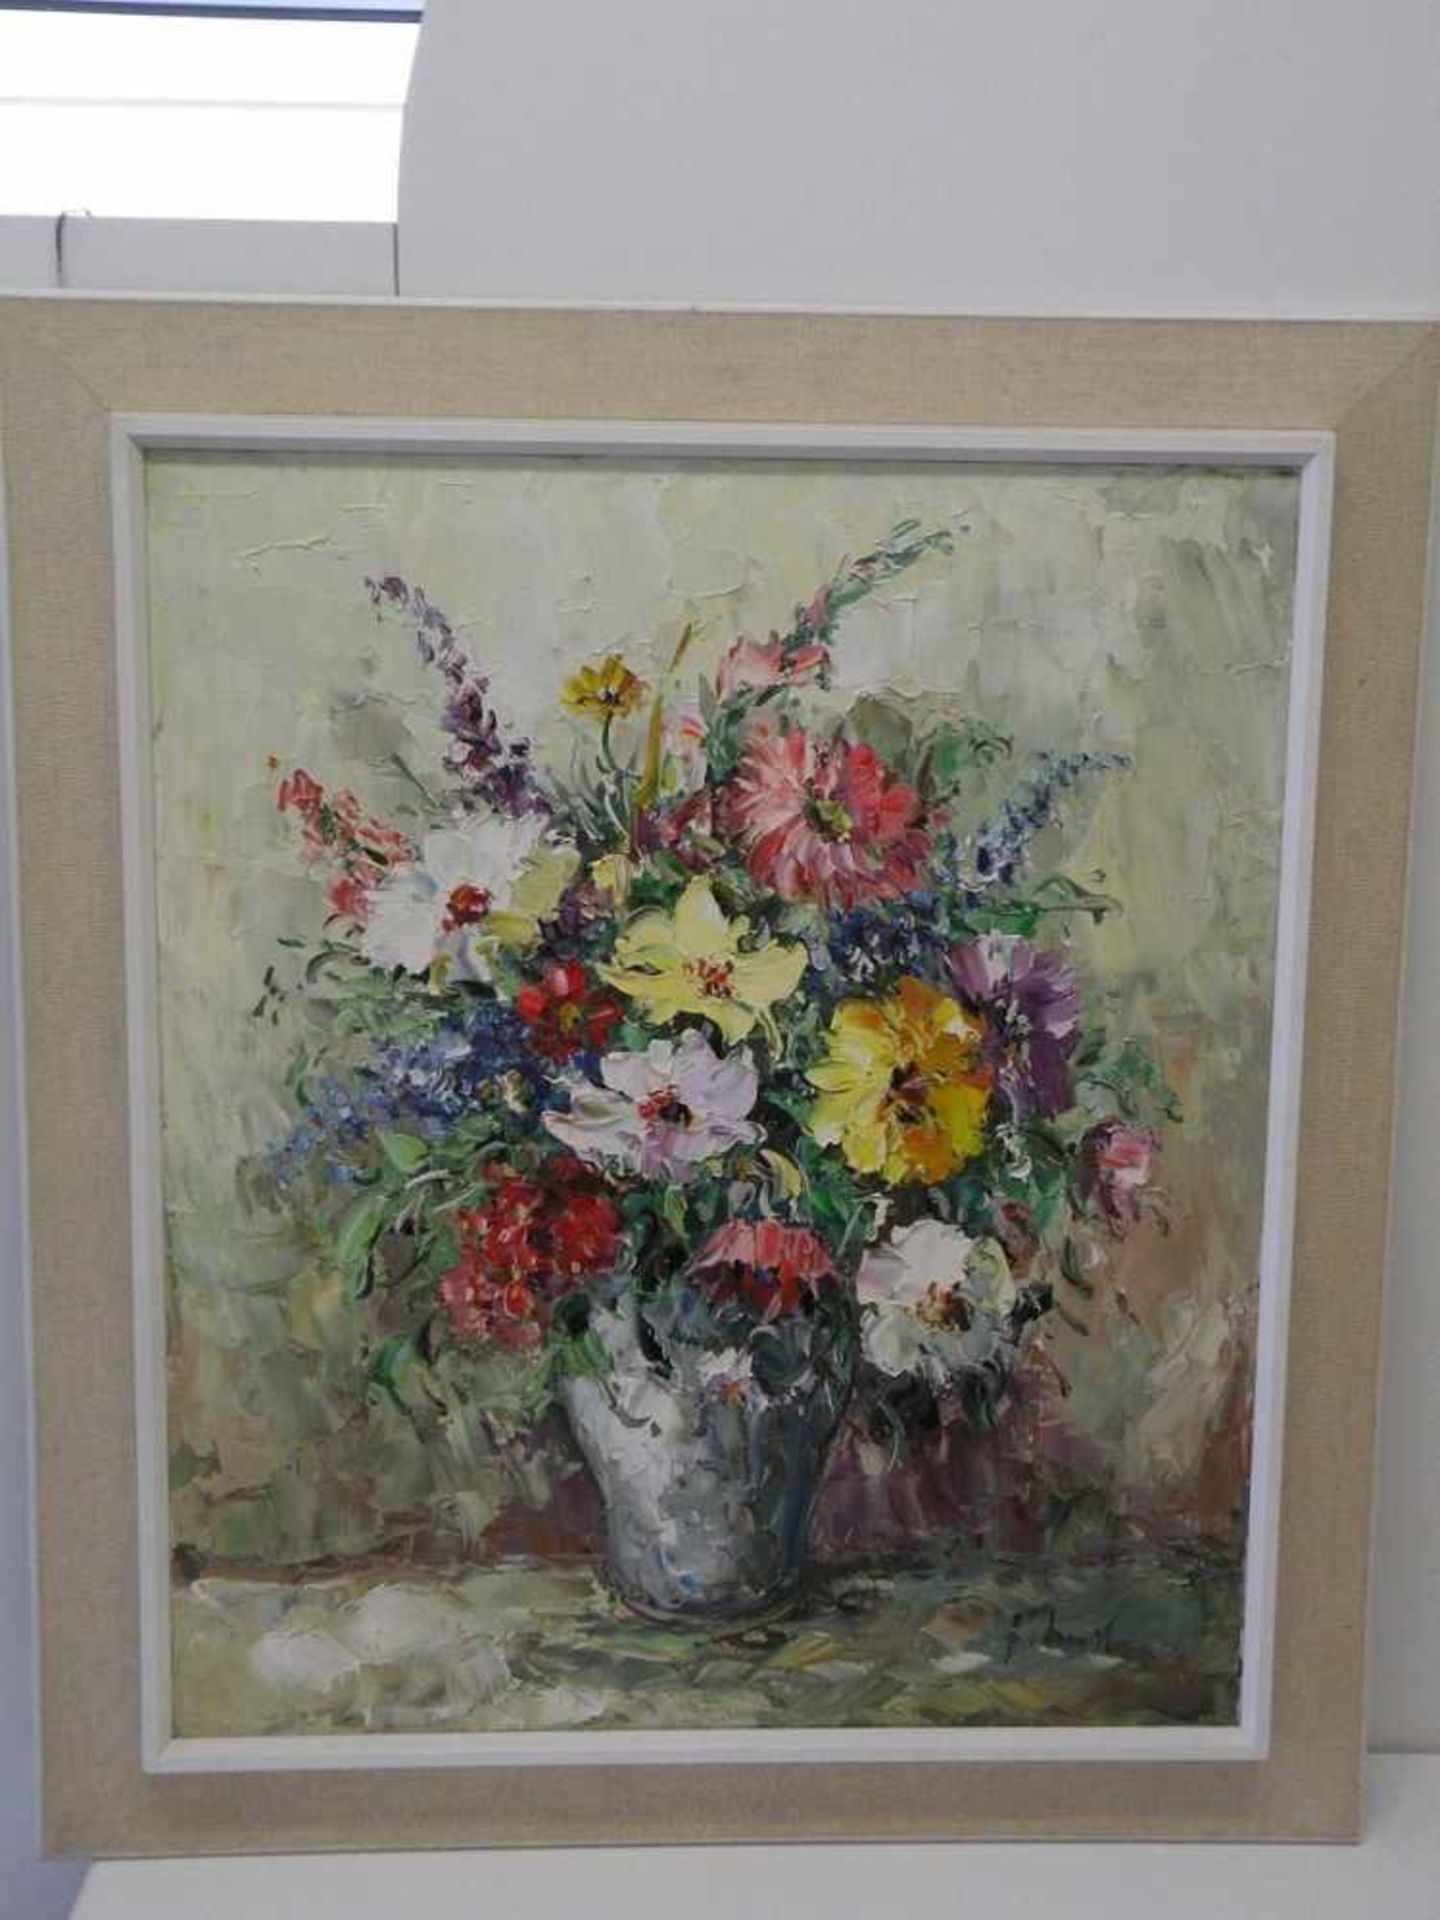 Blumenstillleben, sign. Fritz Schreiber, 1887-1956 Wiesmaden, Öl auf Leinwand, 59x69 cm